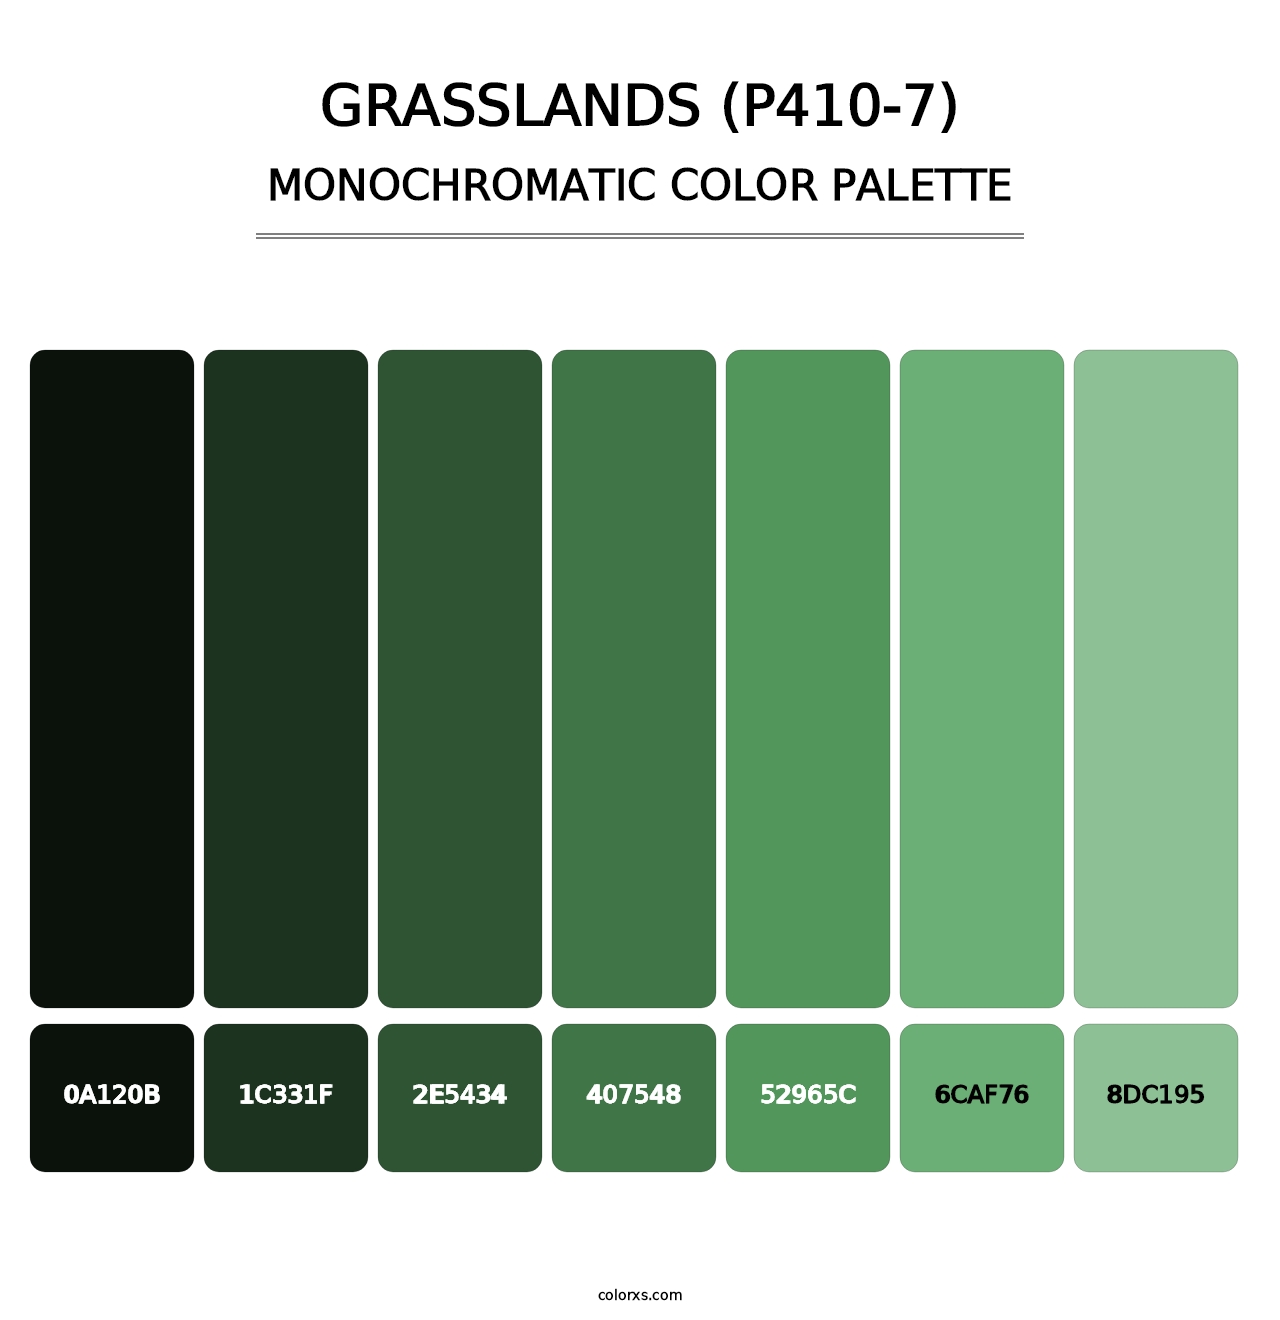 Grasslands (P410-7) - Monochromatic Color Palette